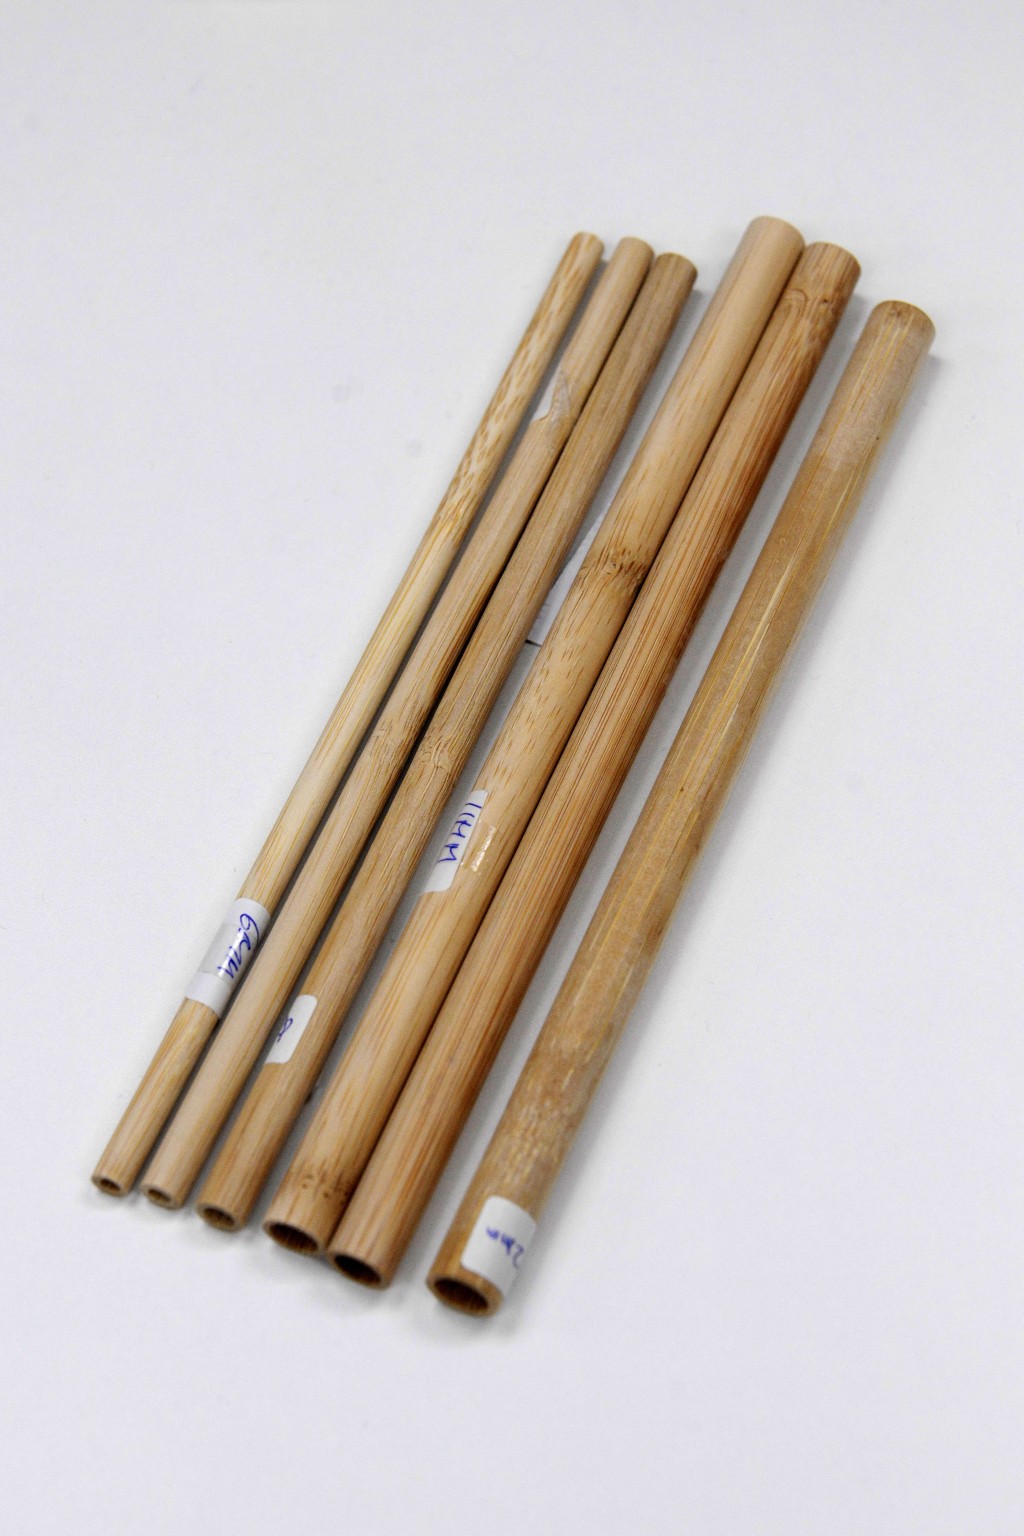 木筷子亦屬環保餐具的一種。